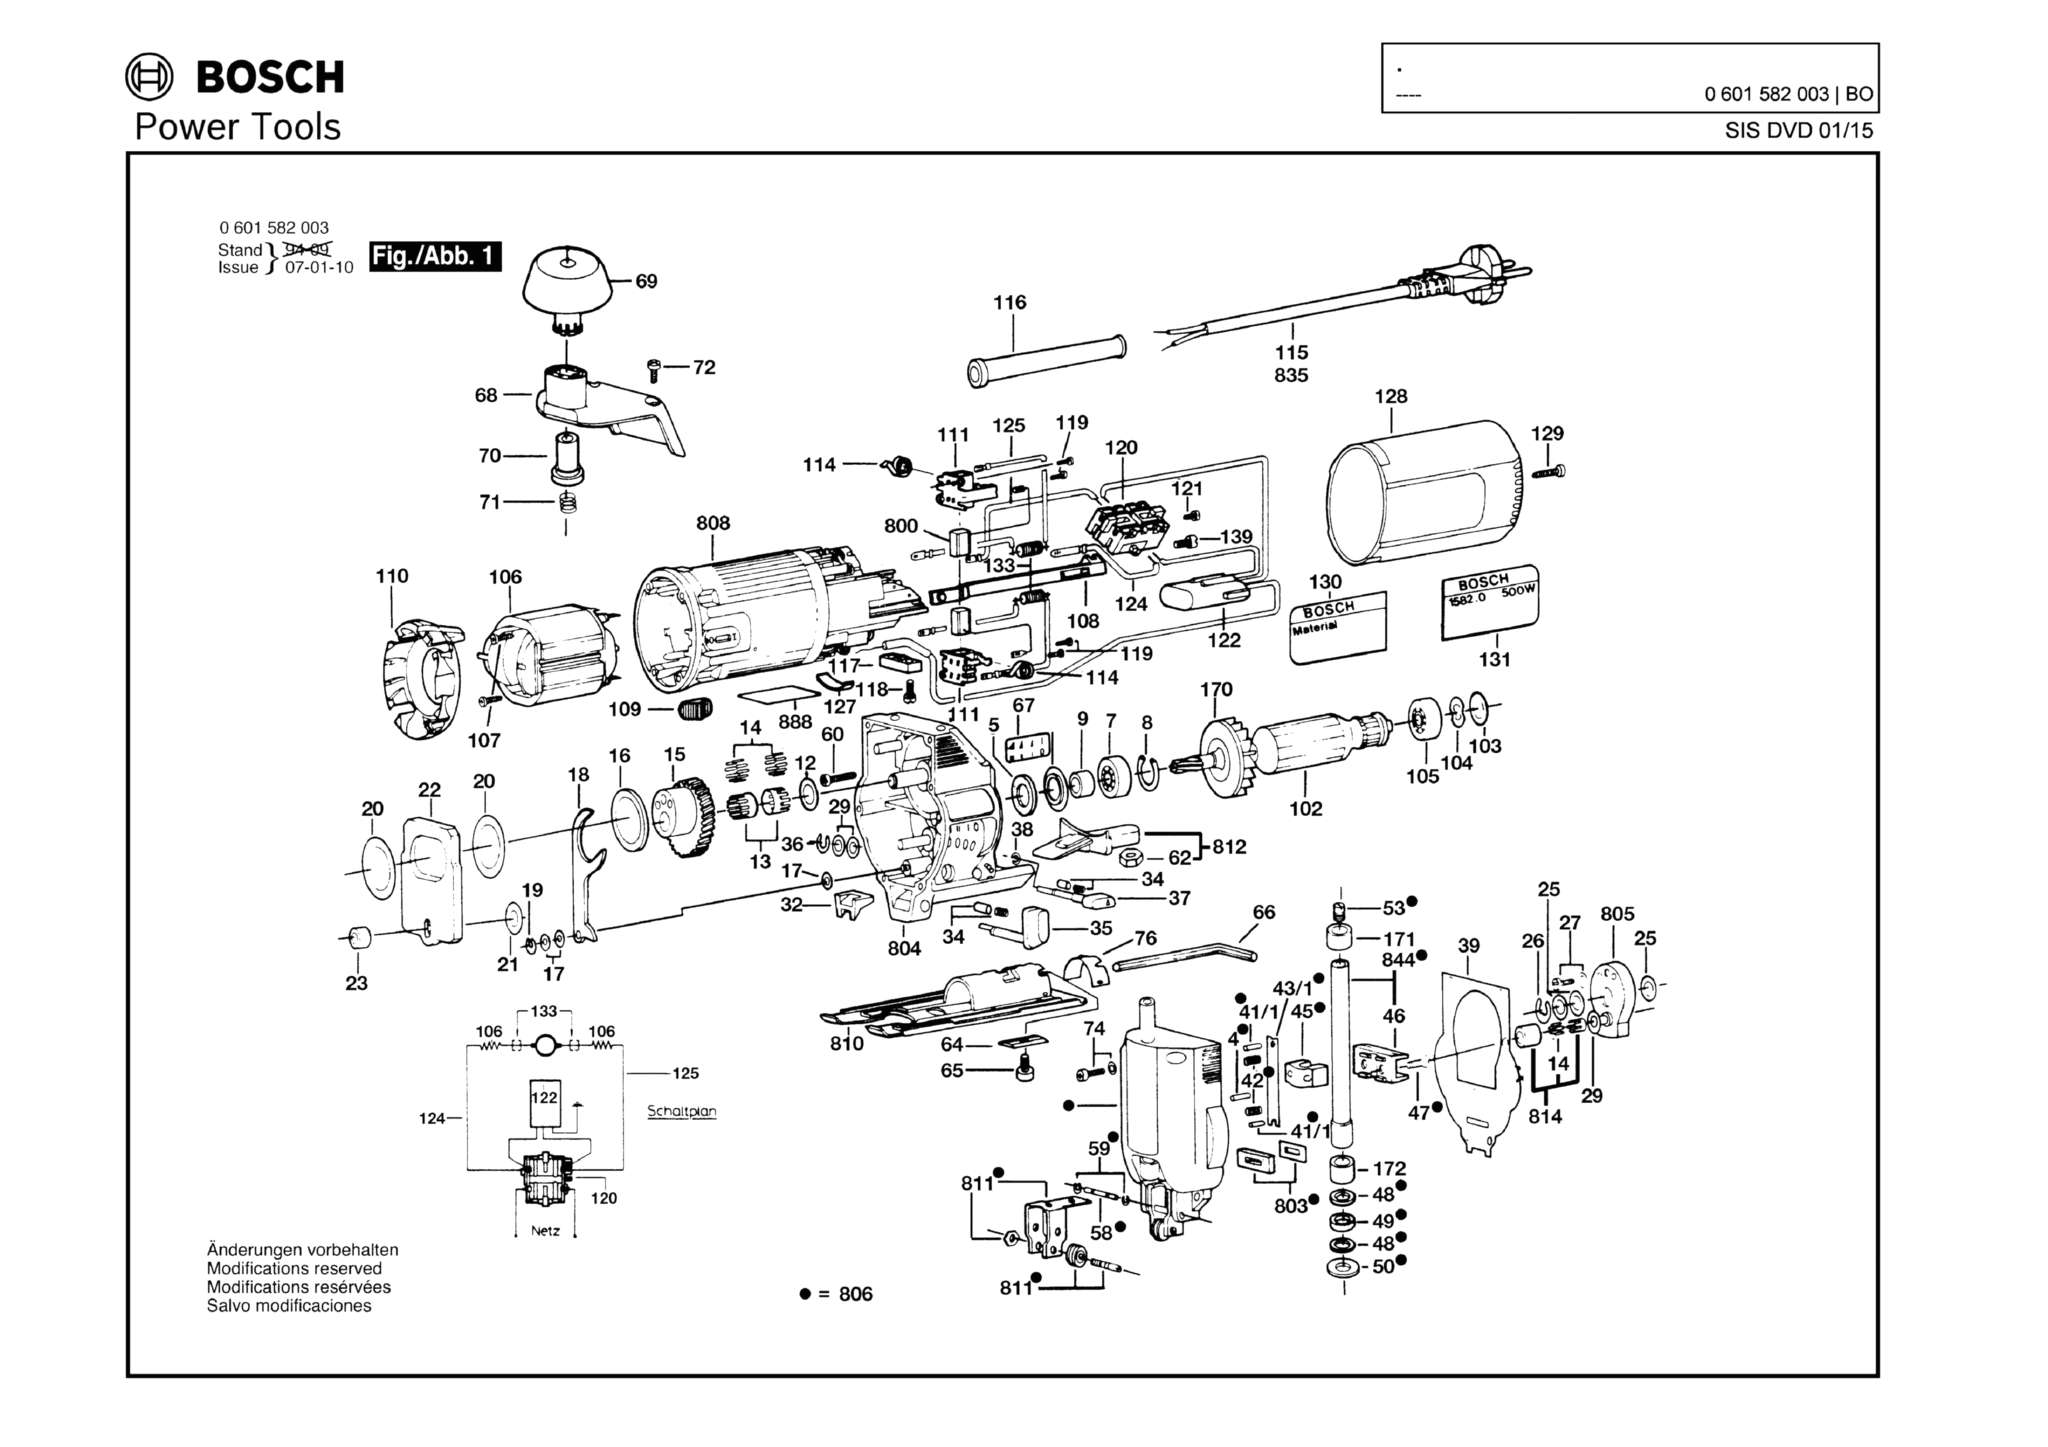 Запчасти, схема и деталировка Bosch (ТИП 0601582003)